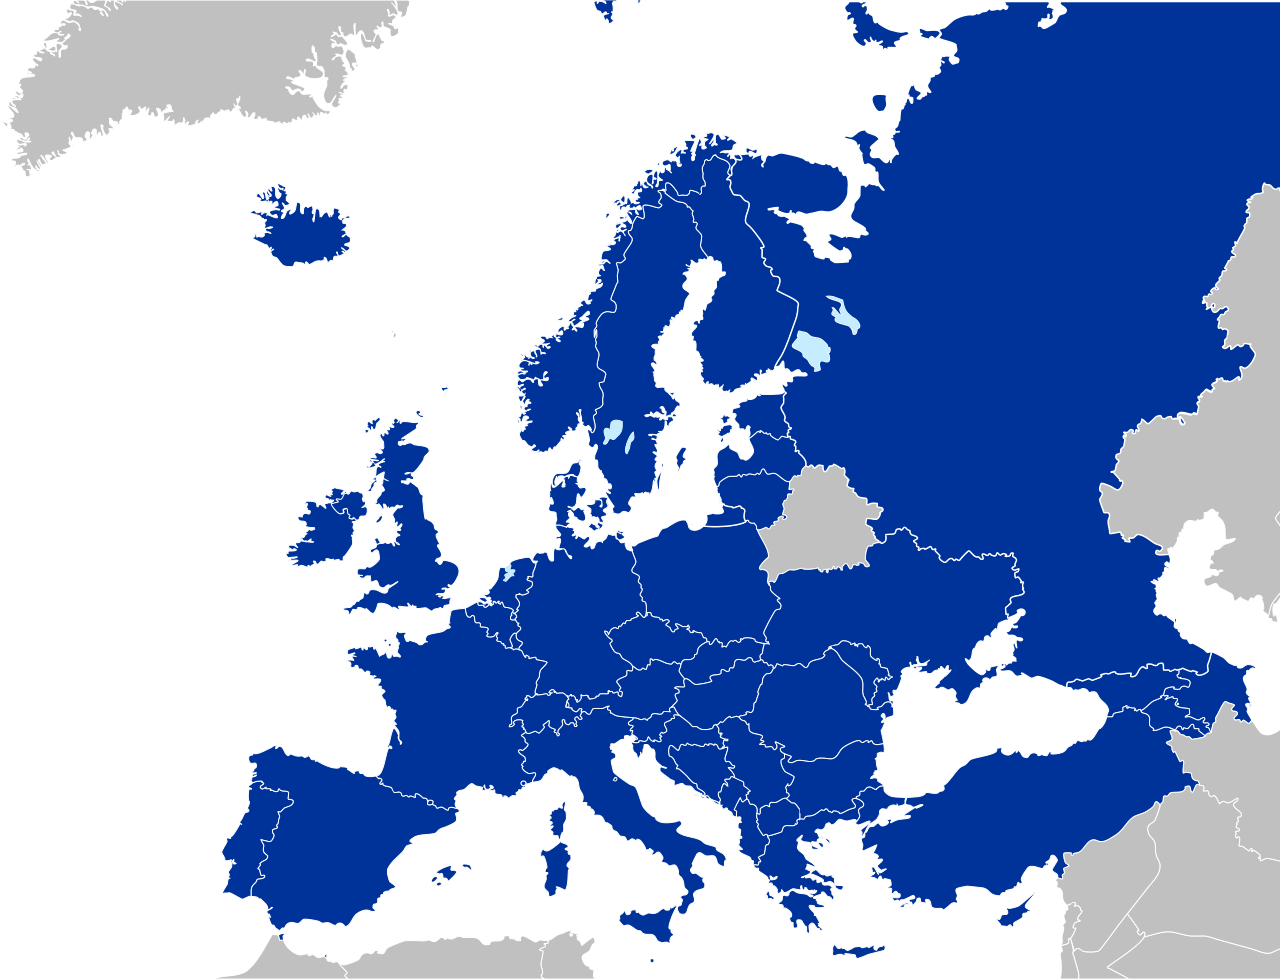 Grafika przedstawia mapę Europy i części kilku innych państw i terytoriów graniczących ze Starym Kontynentem. Większość państw zaznaczona jest kolorem granatowym. Są to strony konwencji o ochronie praw człowieka. Pozostałe państwa nie będące stronami konwencji oznaczono kolorem szarym i są to: Grenlandia, Białoruś, Syria, Iran, Irak, Kazachstan.